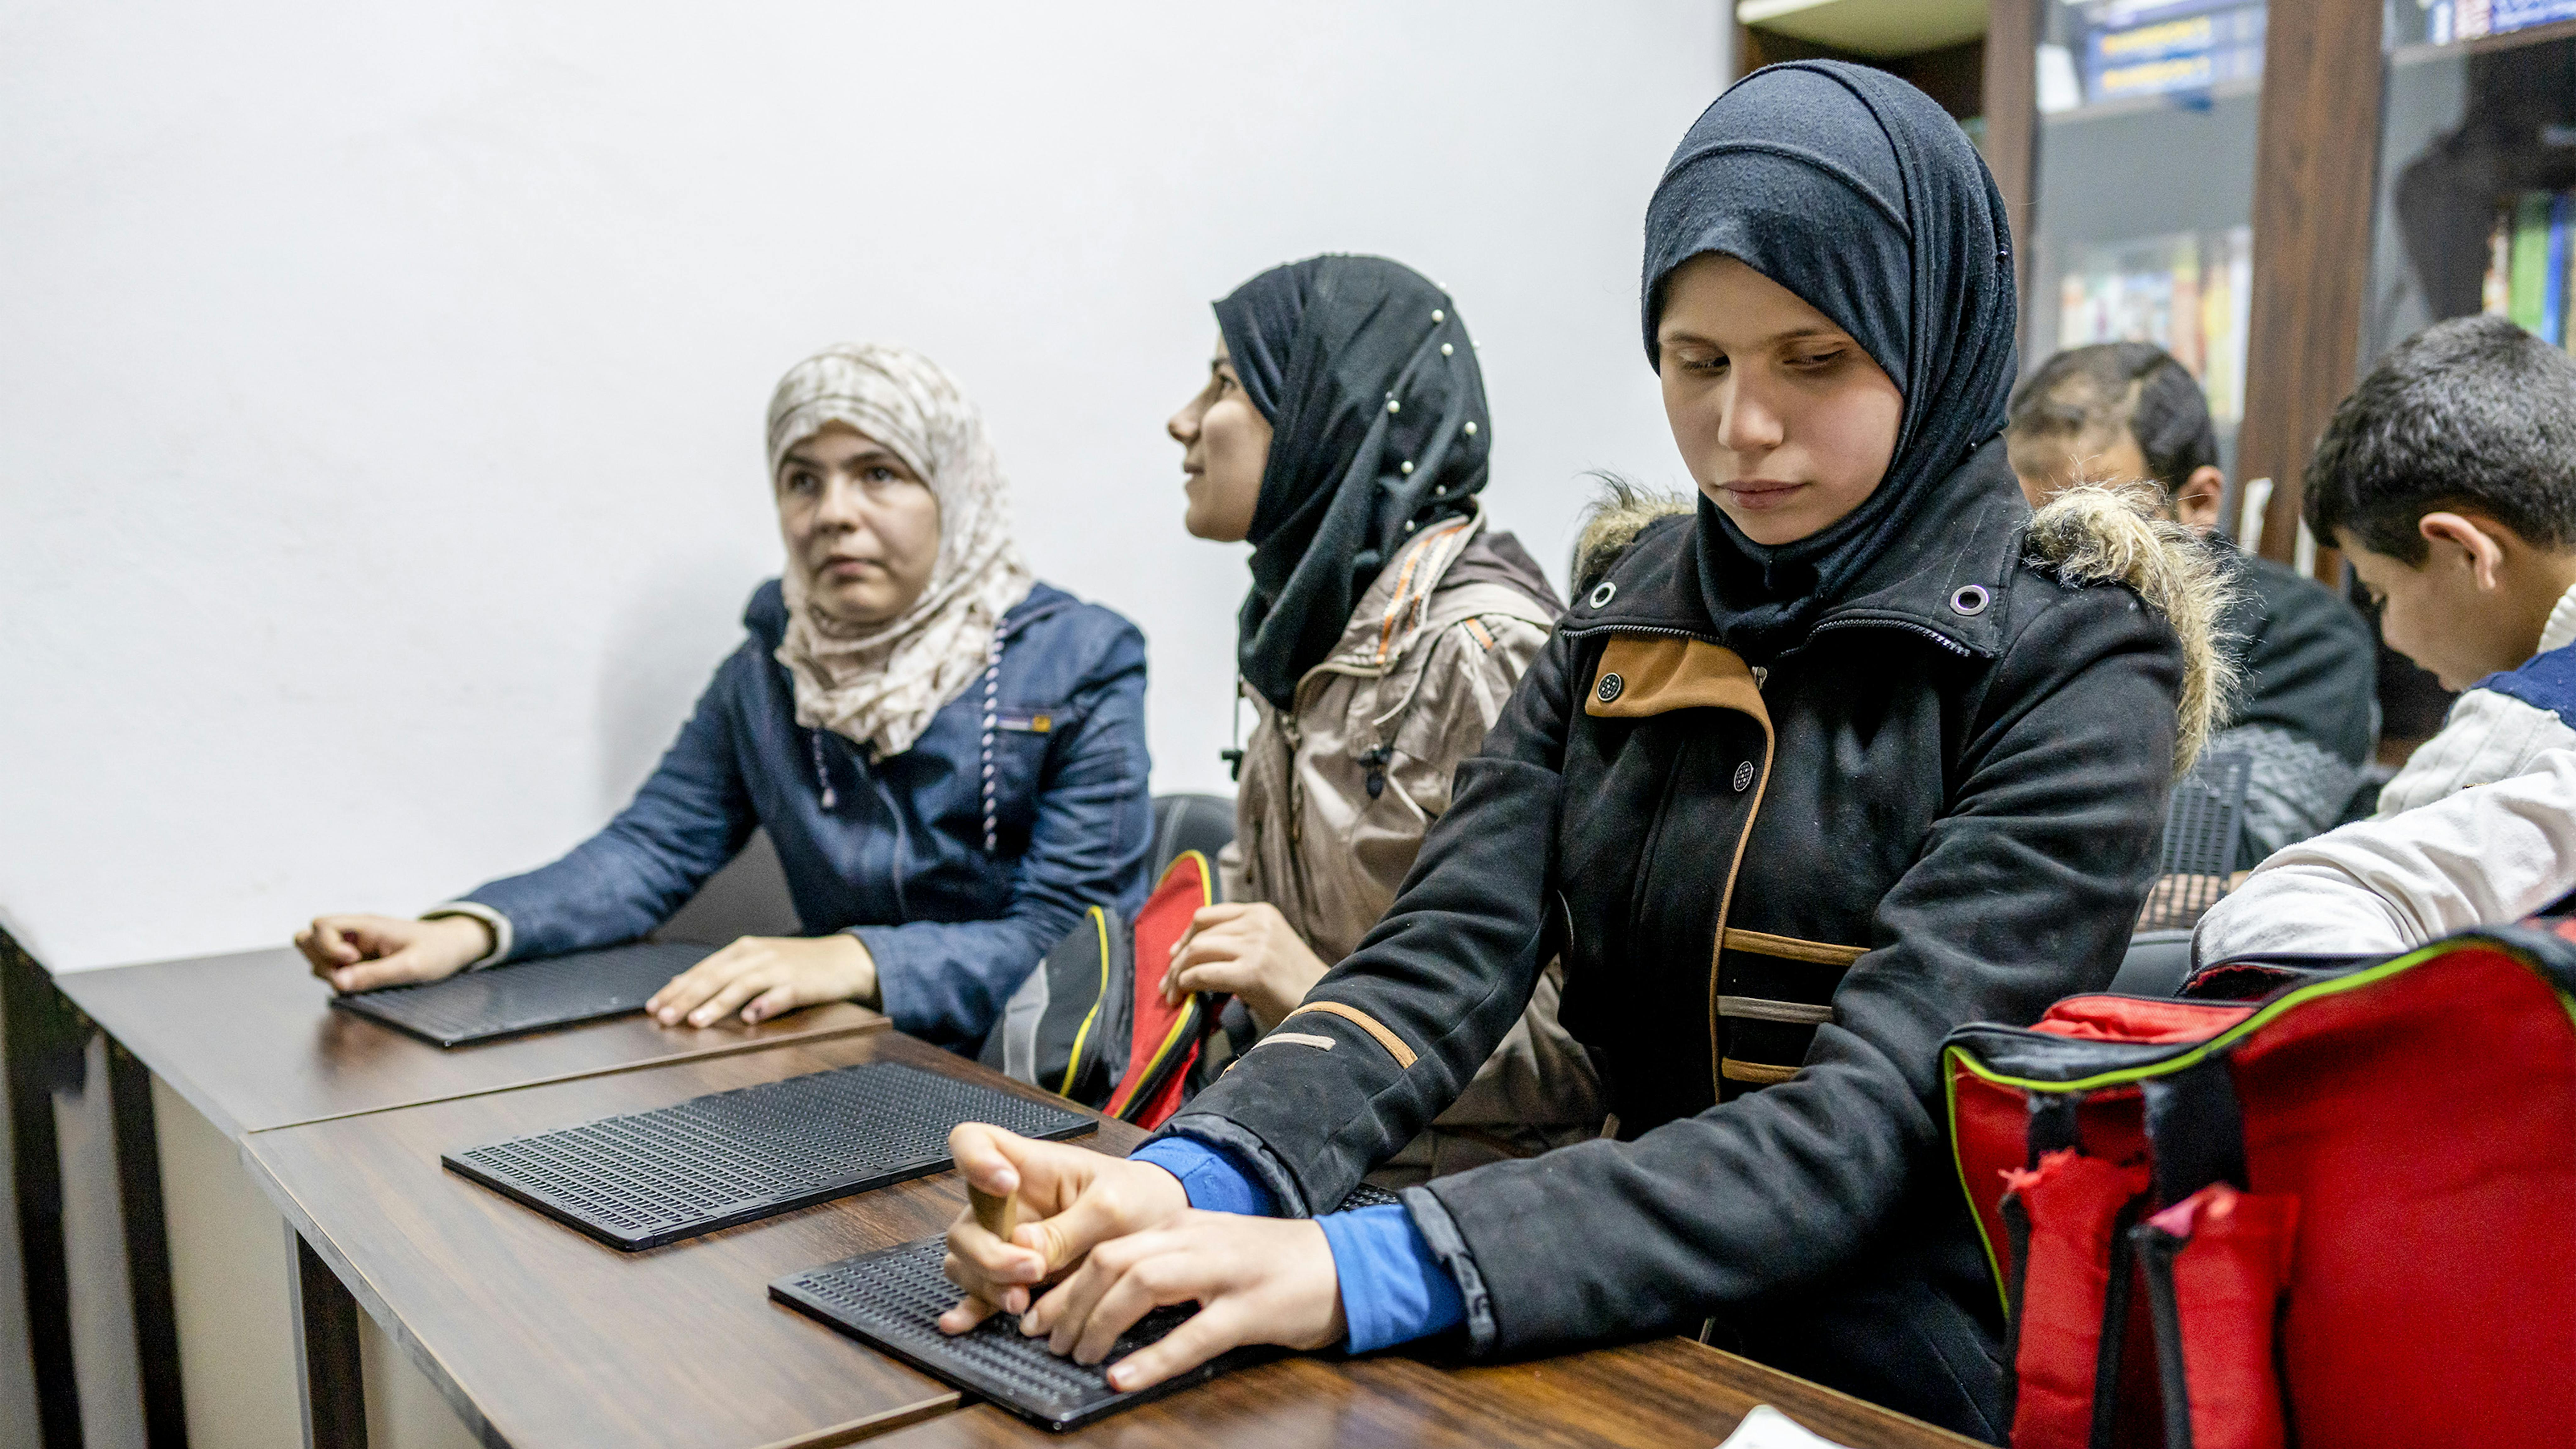 Siria - Haifa frequenta un corso di lingua inglese presso un centro sostenuto dall'UNICEF e gli piace scrivere poesie